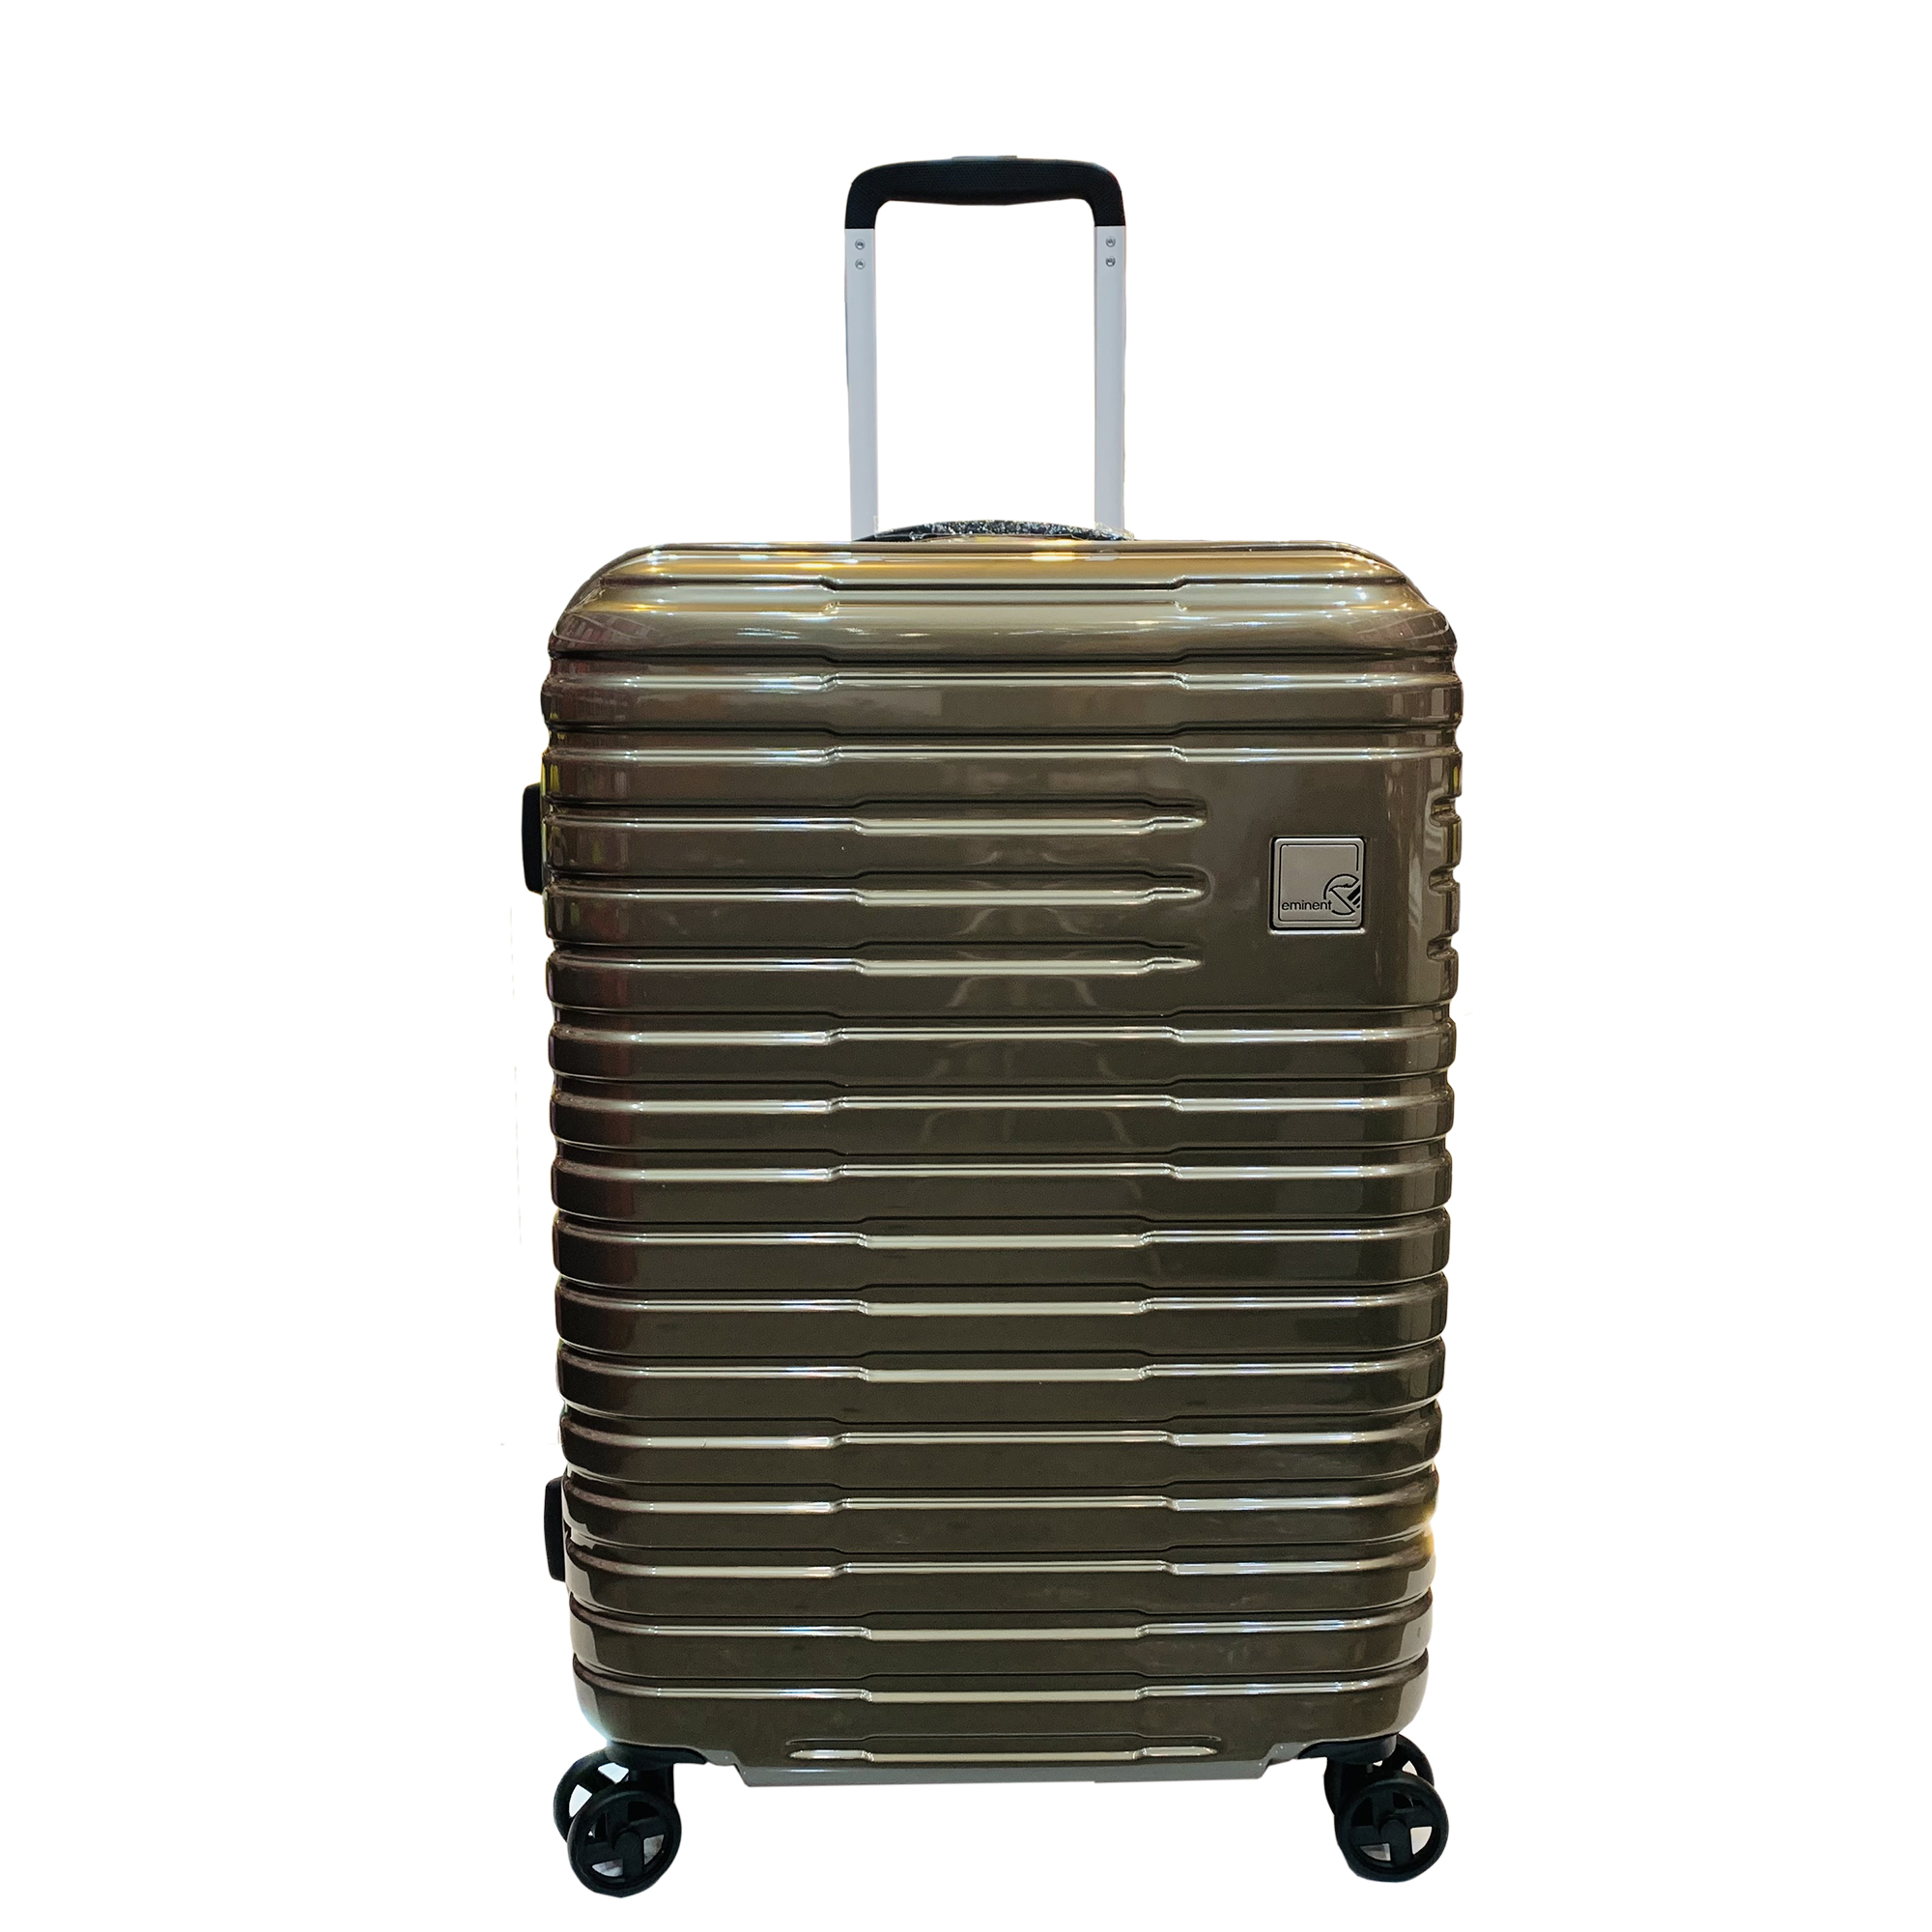 چمدان امیننت مدل C0399 سایز متوسط